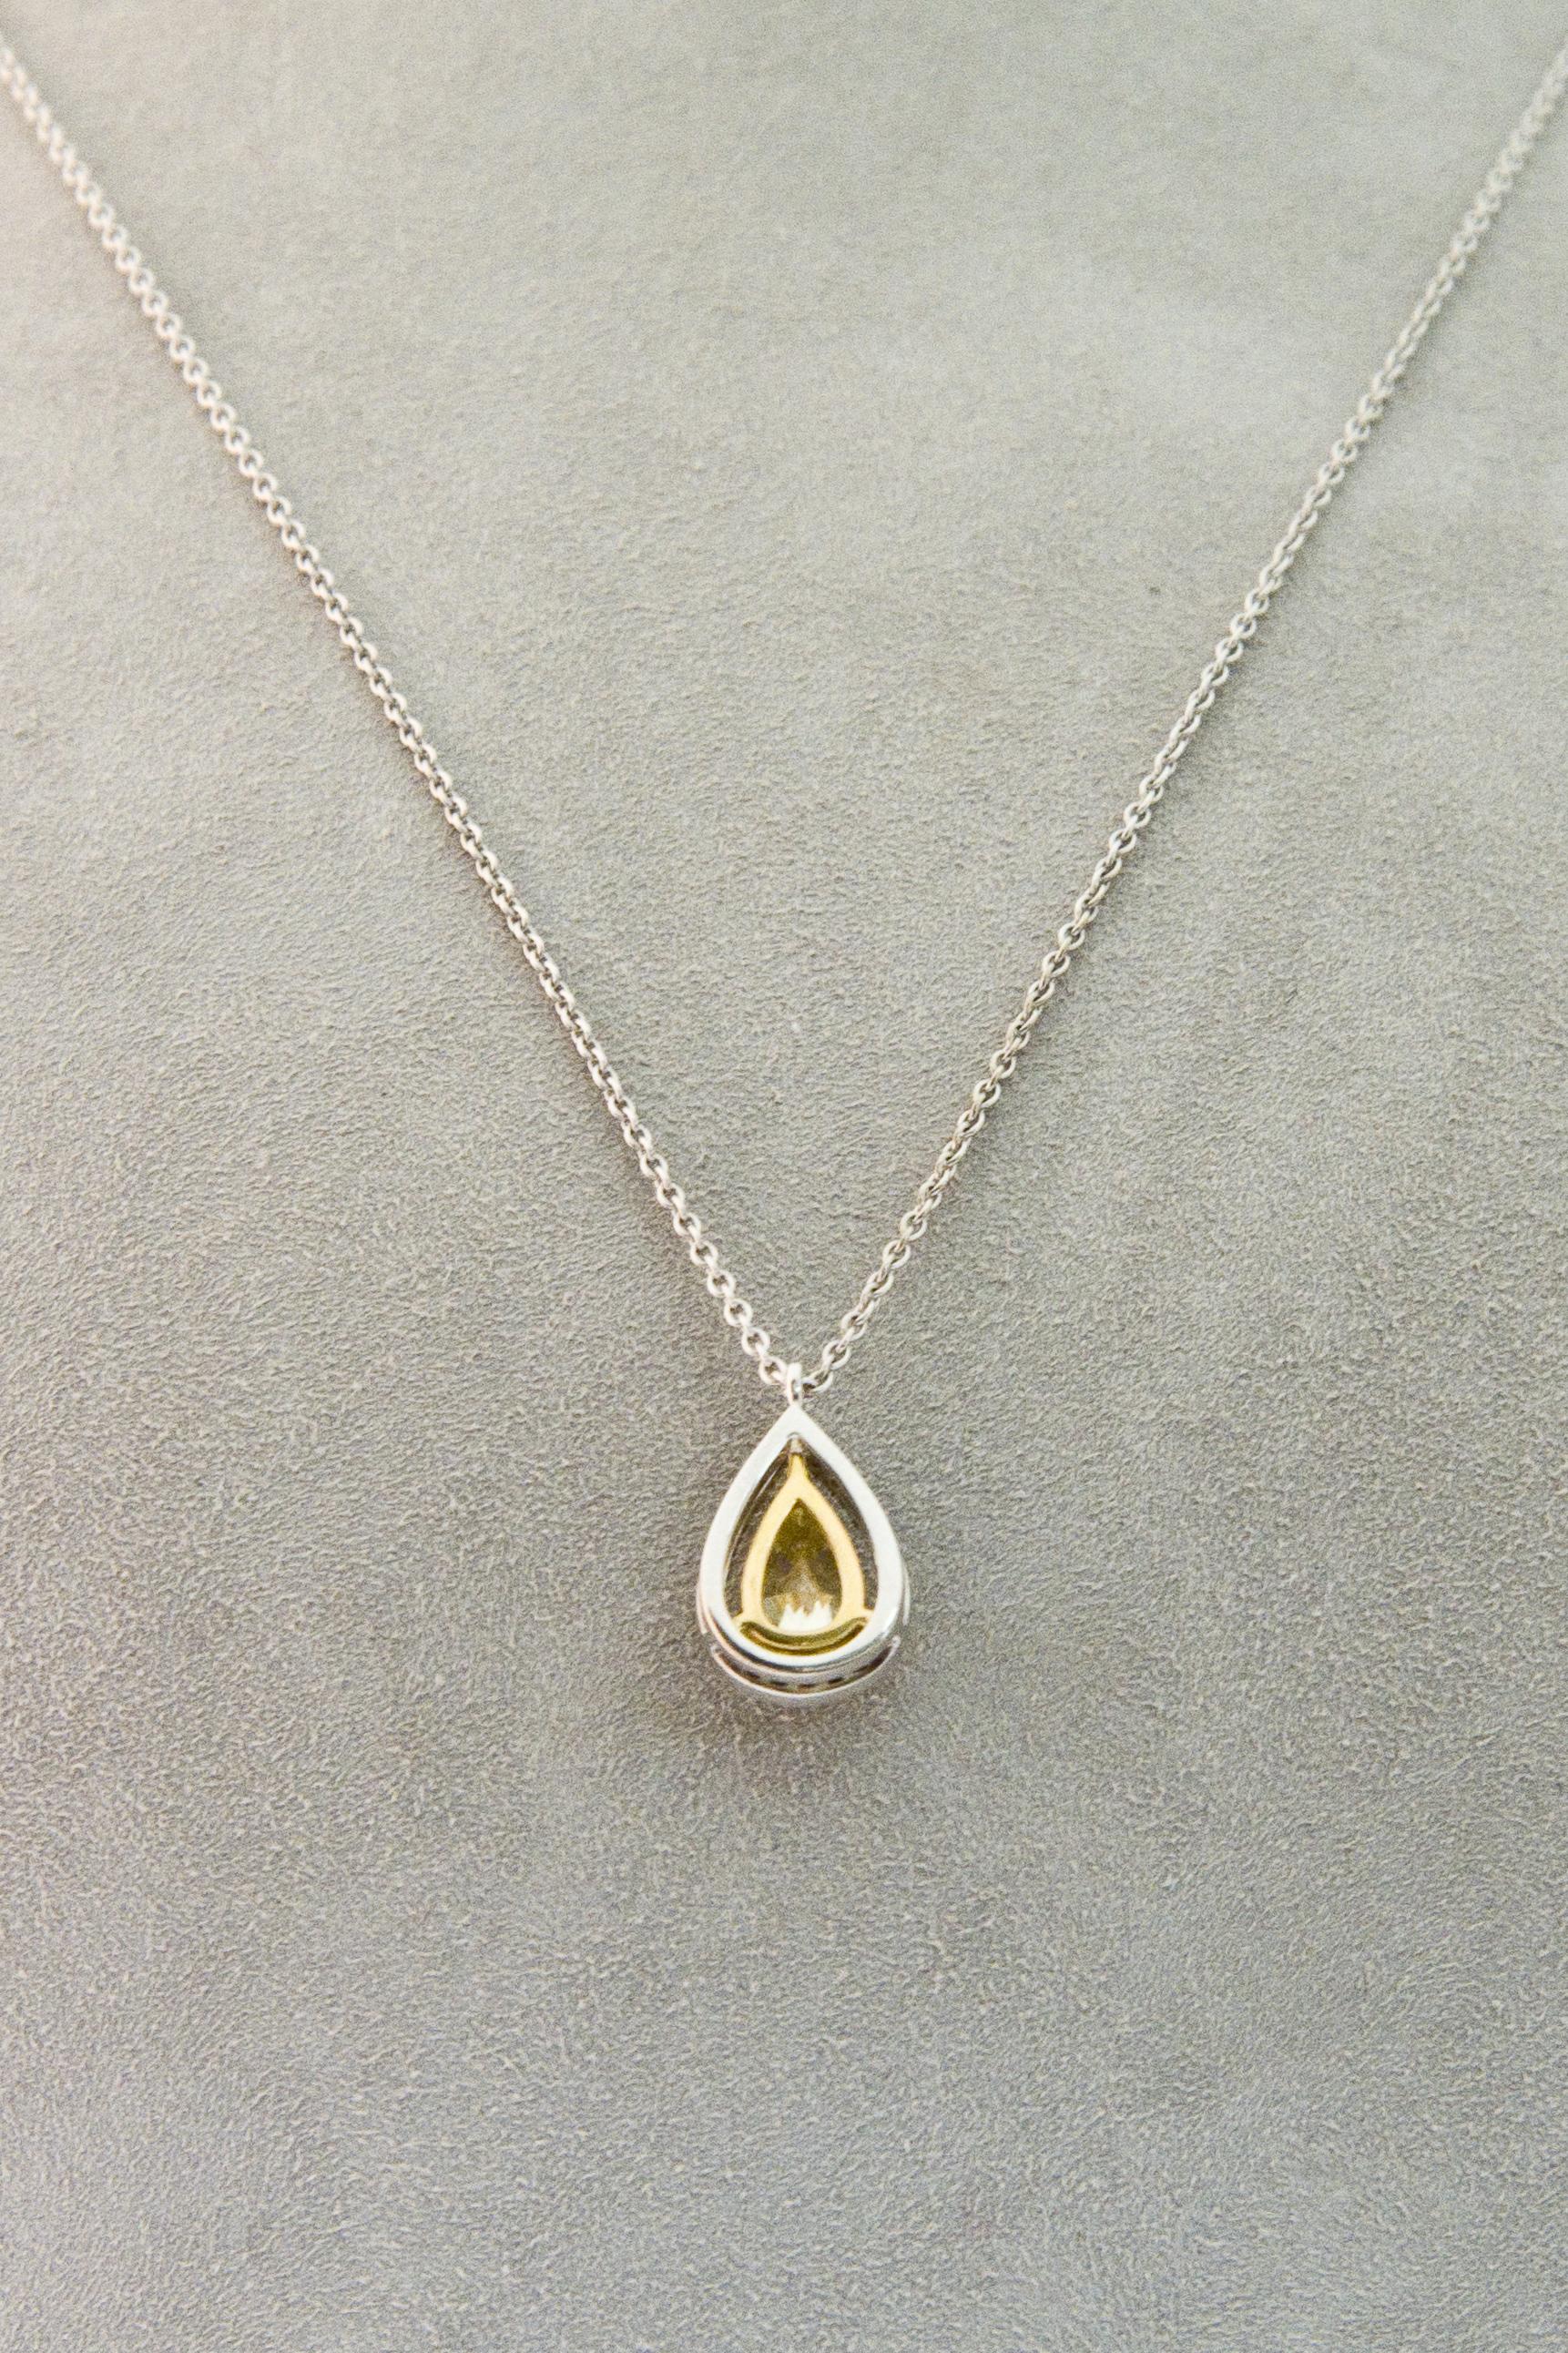 Fancy Yellow Diamond 1.5 ct GIA, White Diamond , White Gold 18 K Pendant Necklace 5